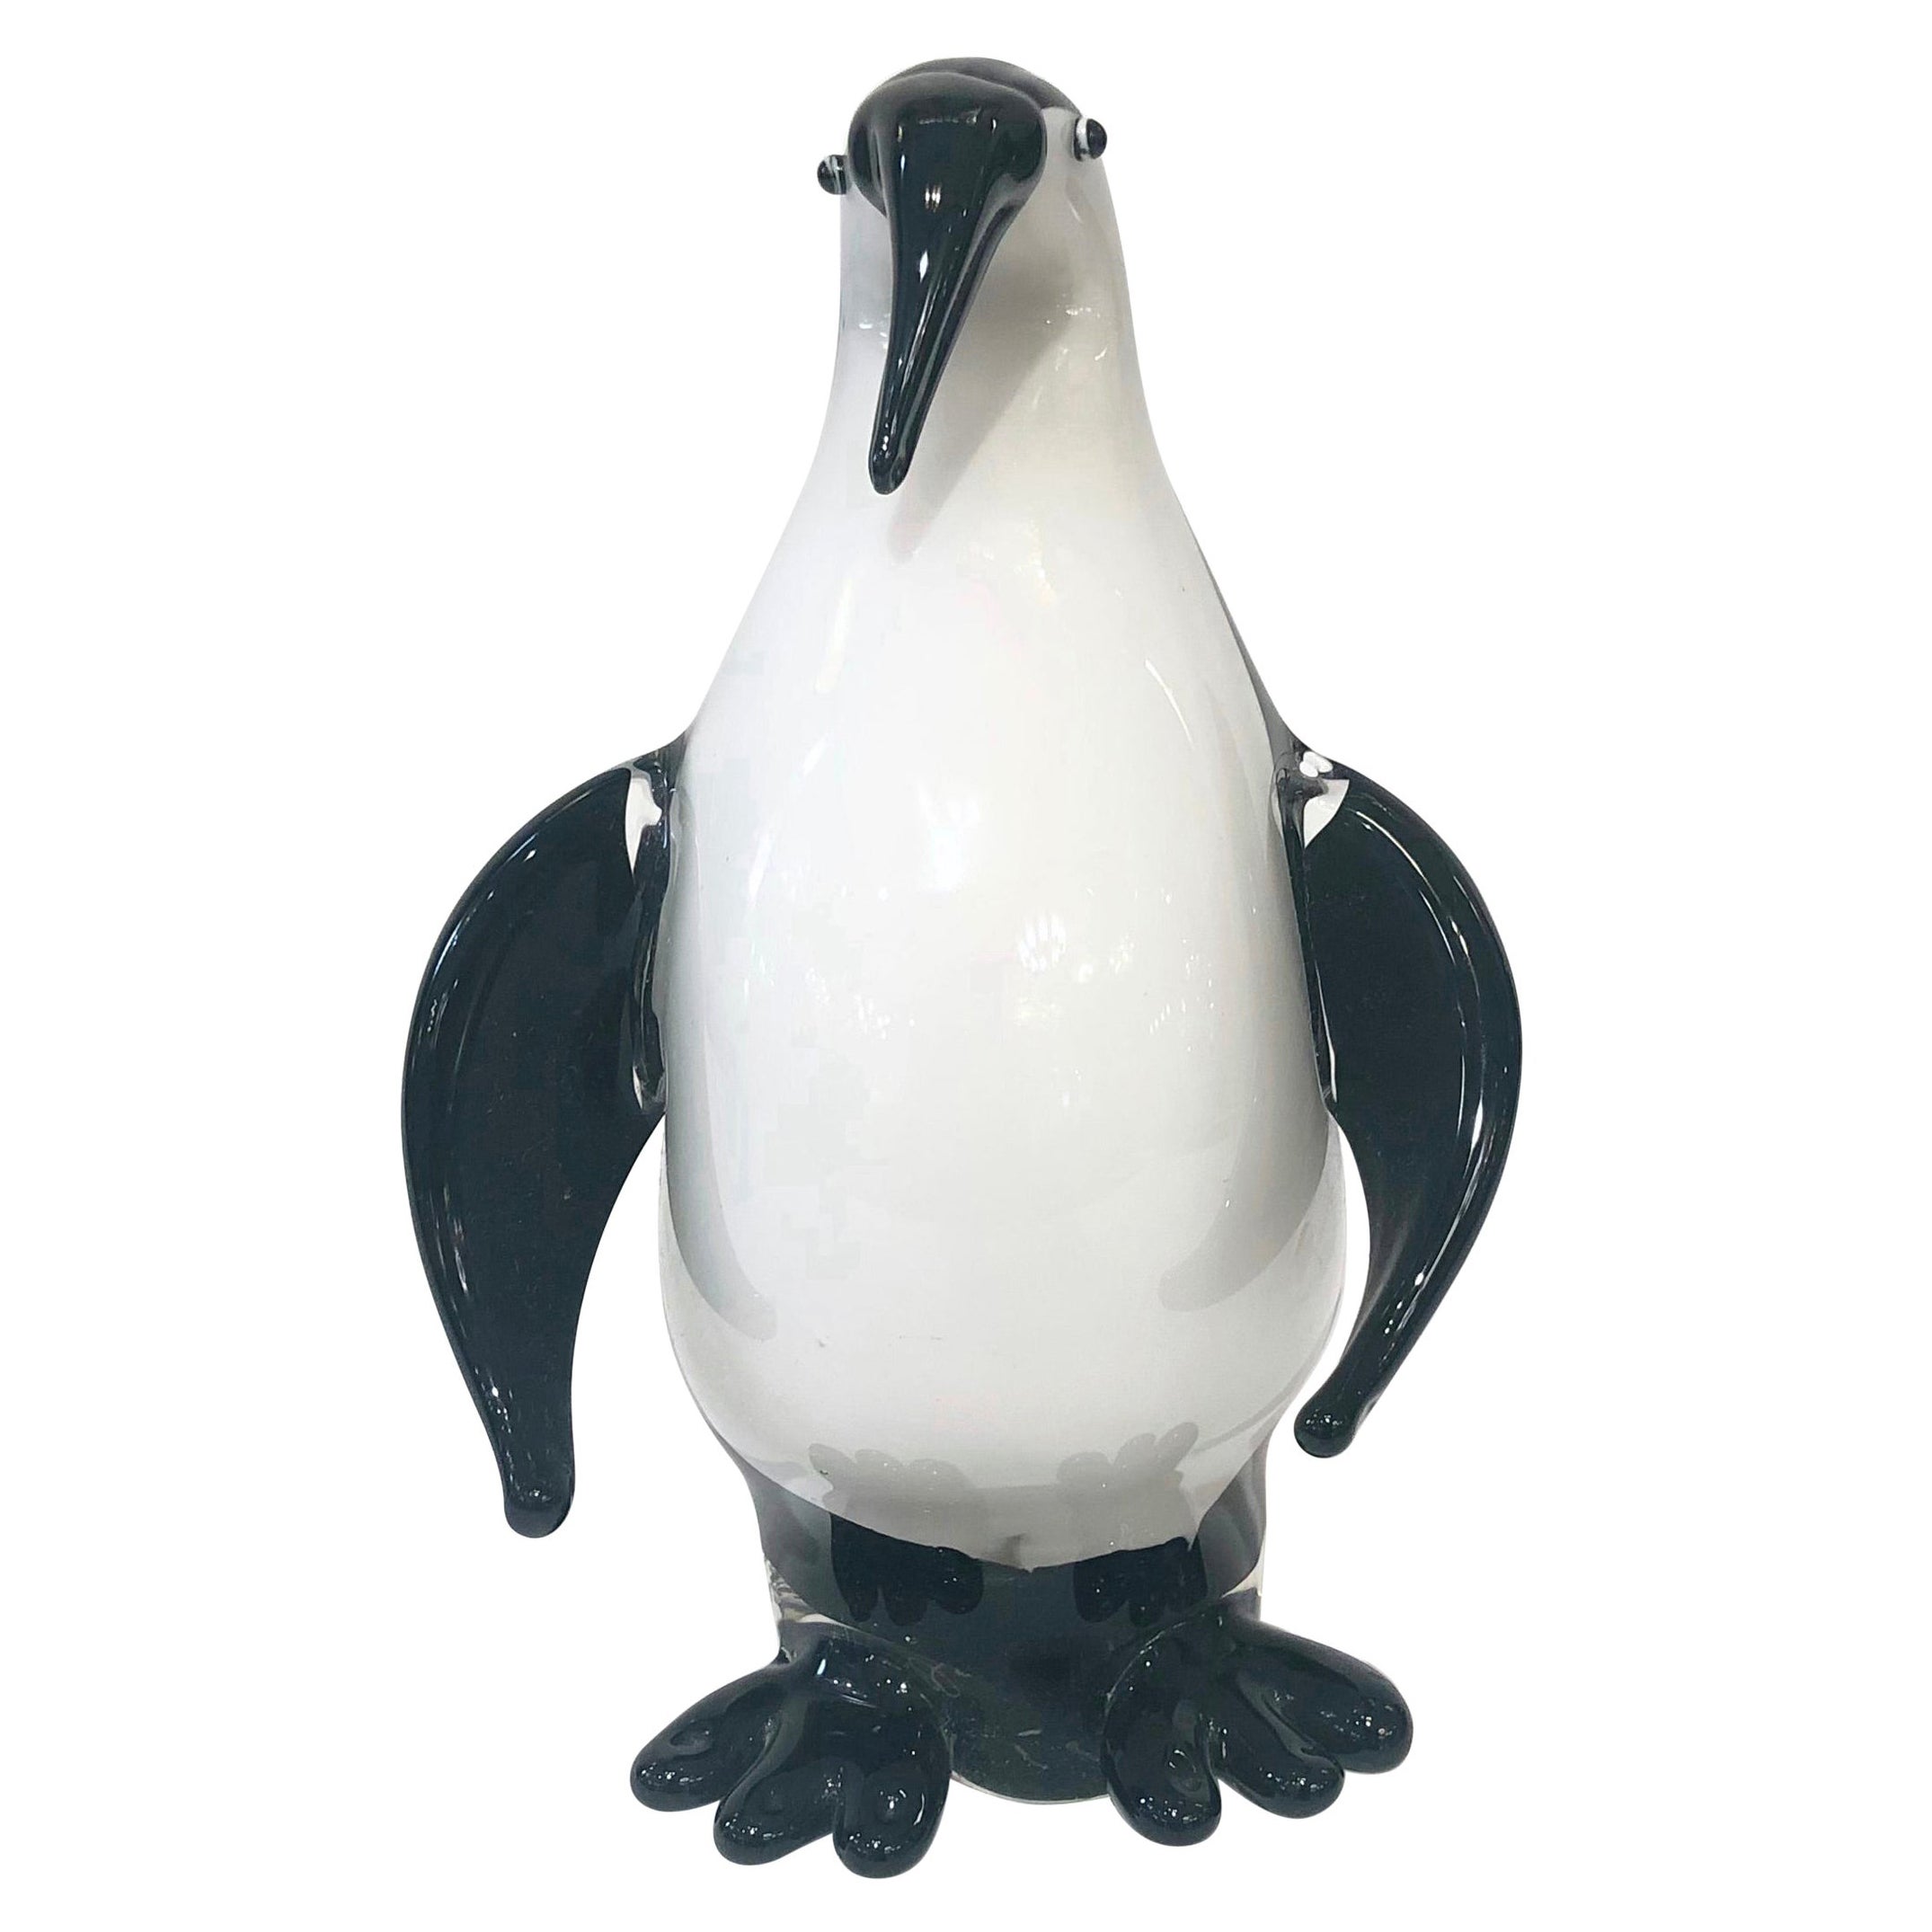 Sculpture de pingouin moderne en verre de Murano soufflé noir et blanc.